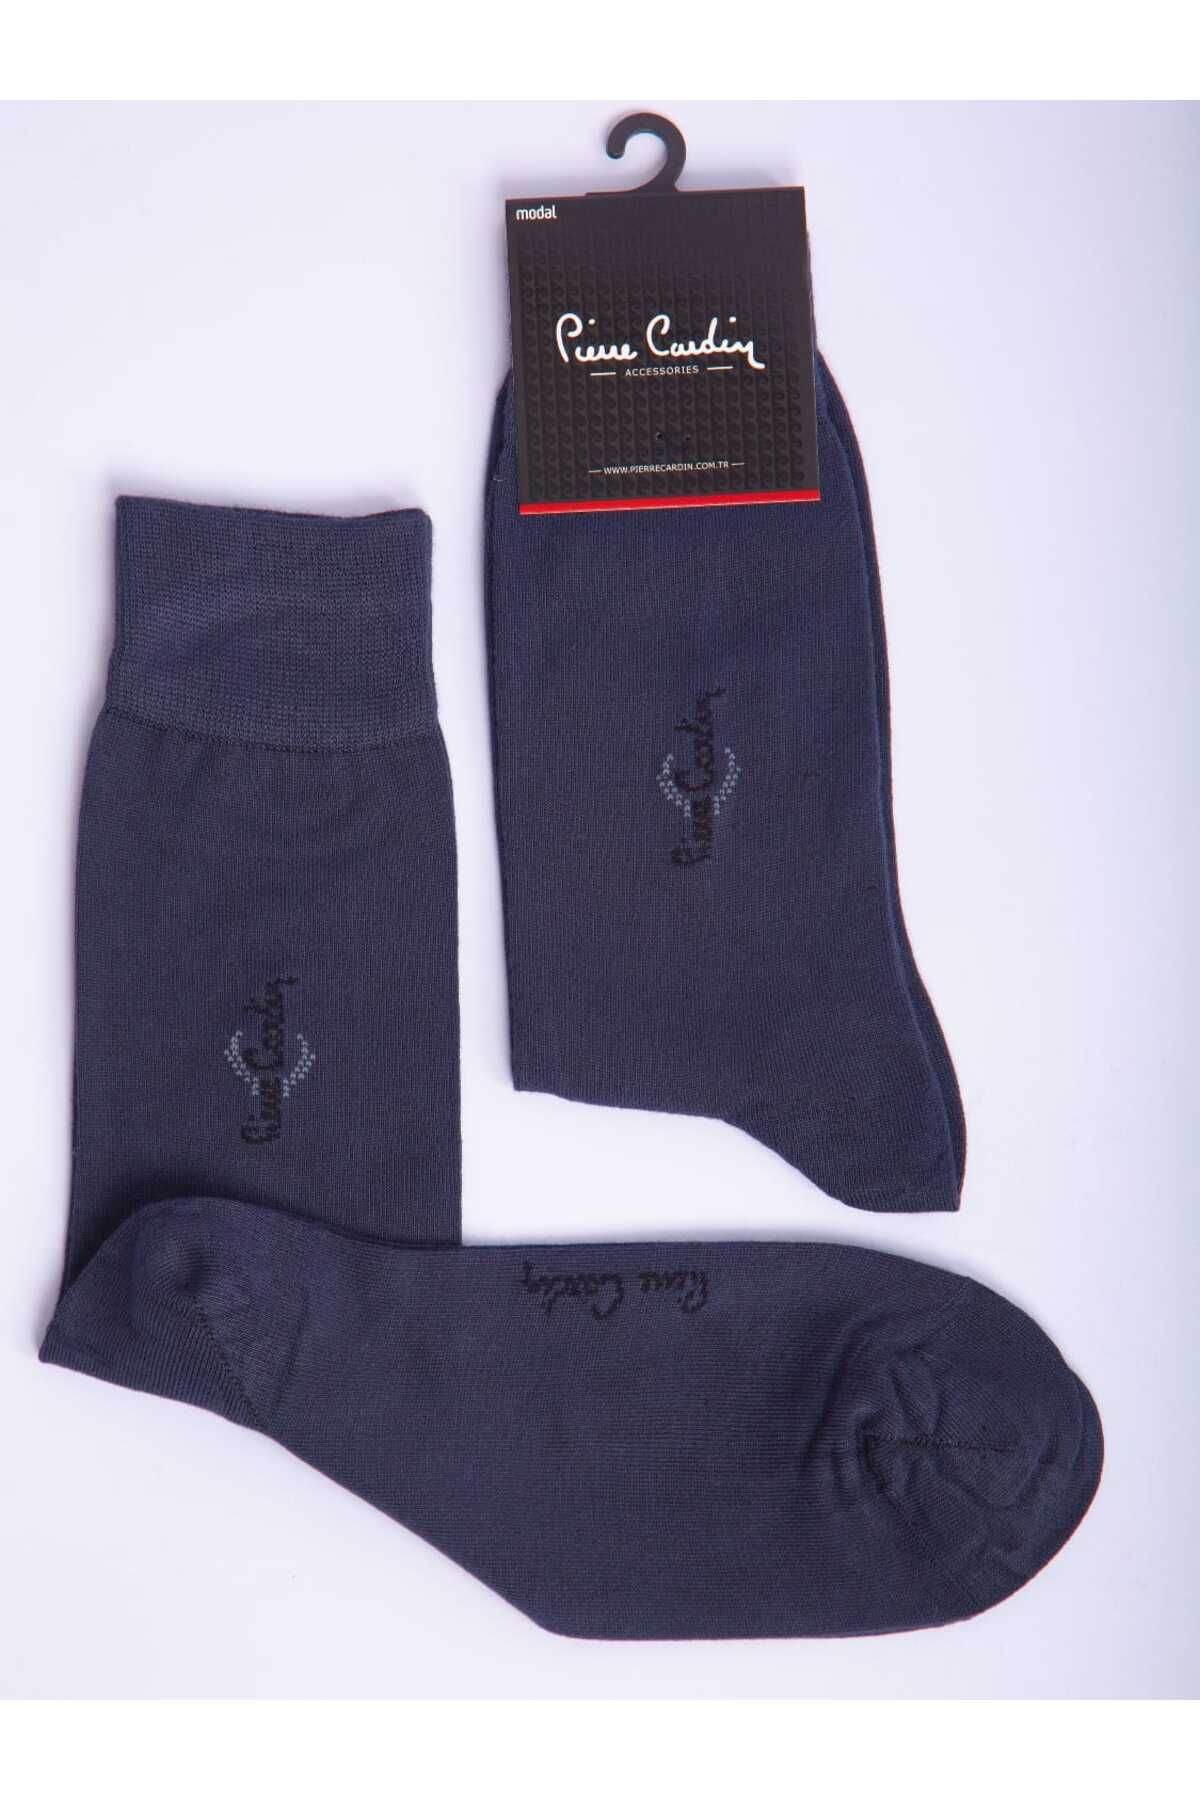 Pierre Cardin Modal Tekli Antrasit Renkli Erkek Uzun Soket Çorap Code 293